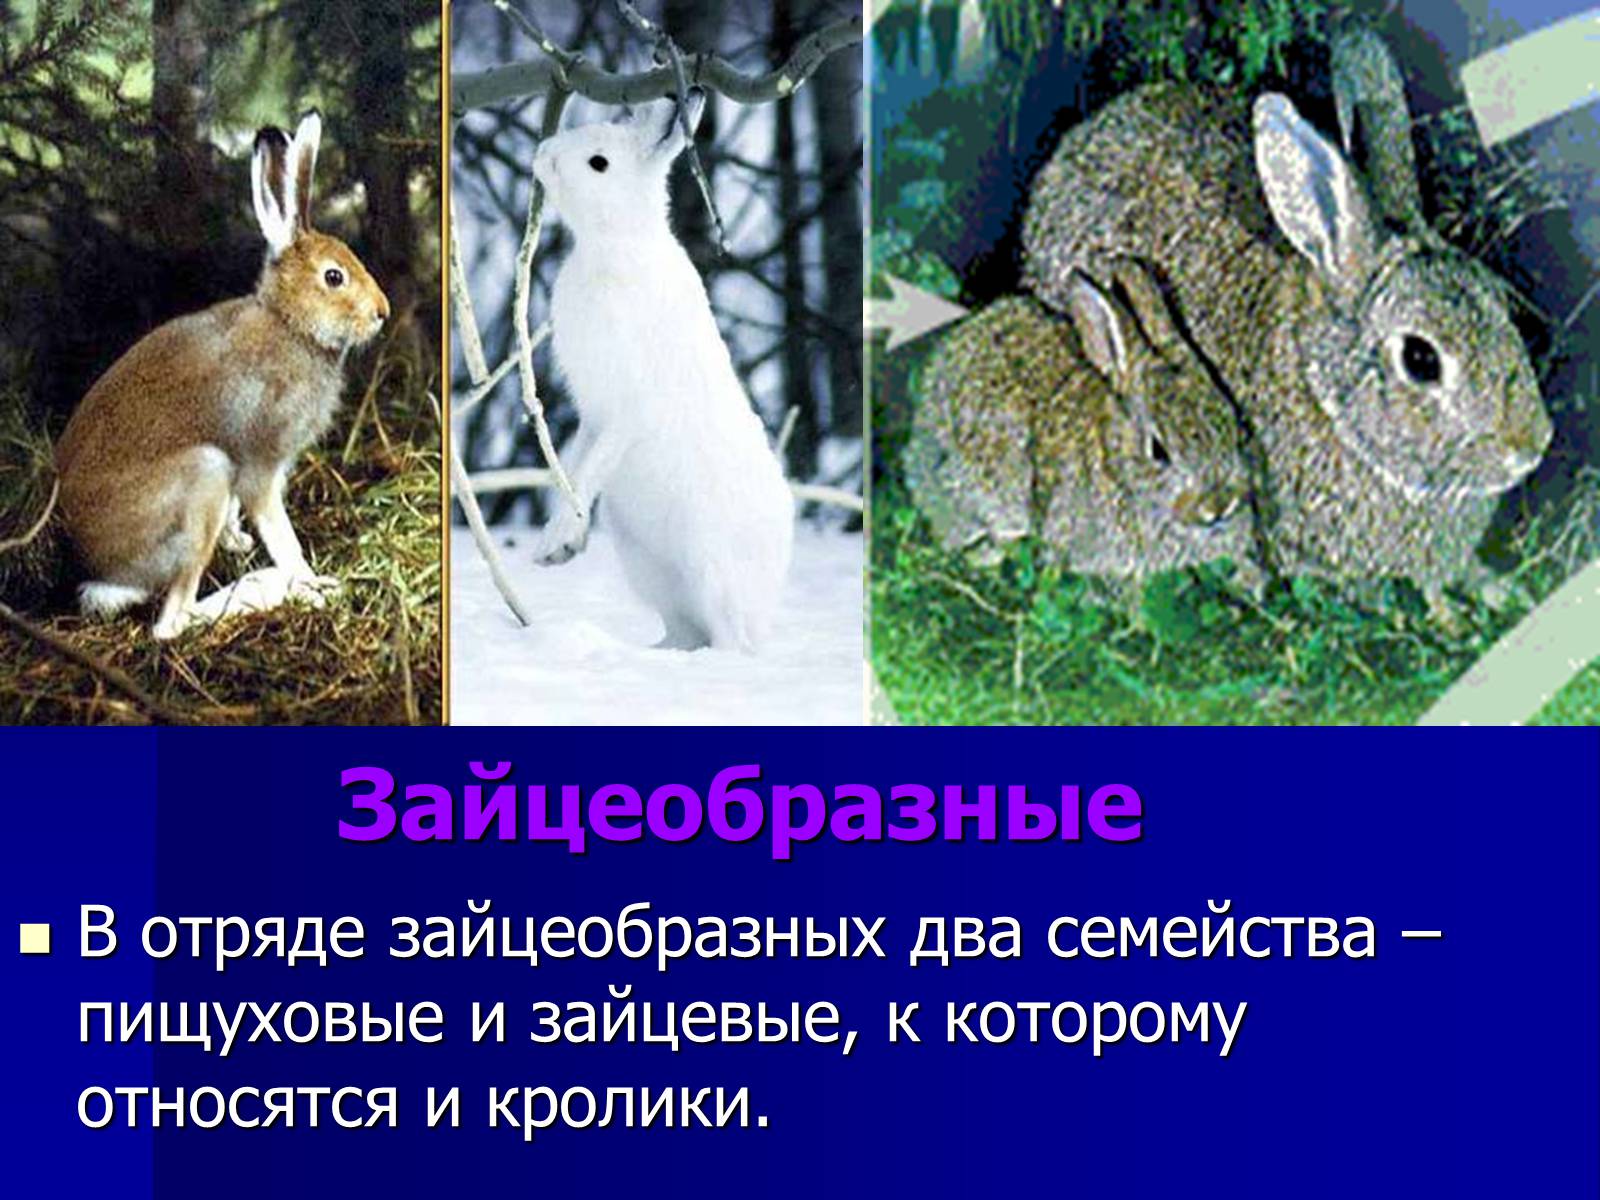 К каким животным относятся кролики